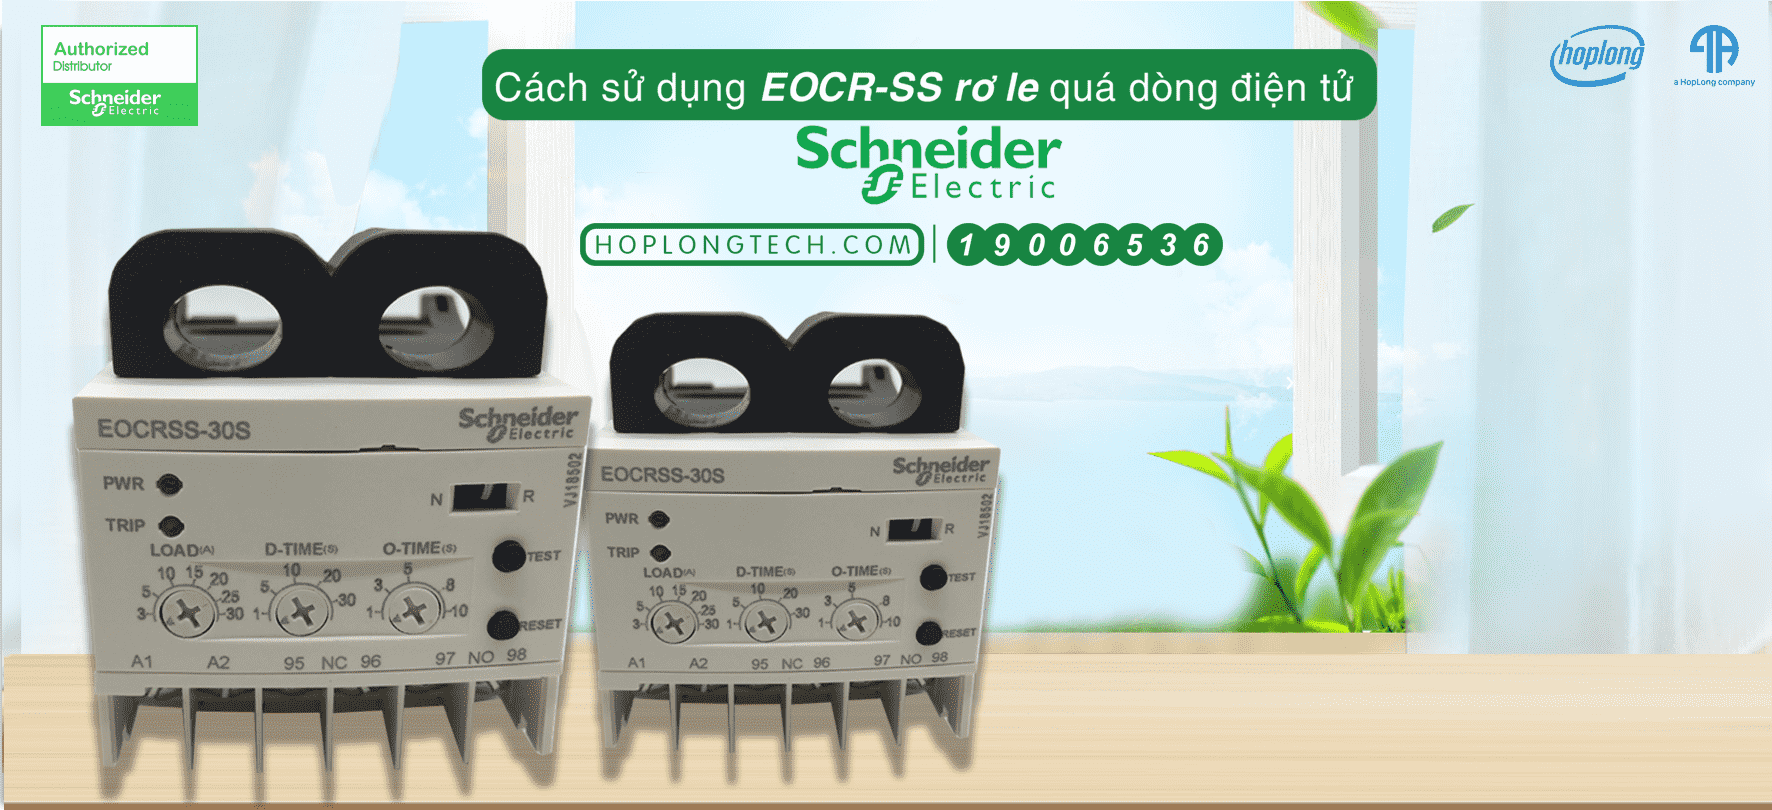 Cách sử dụng EOCR-SS rơle quá dòng điện tử Schneider?